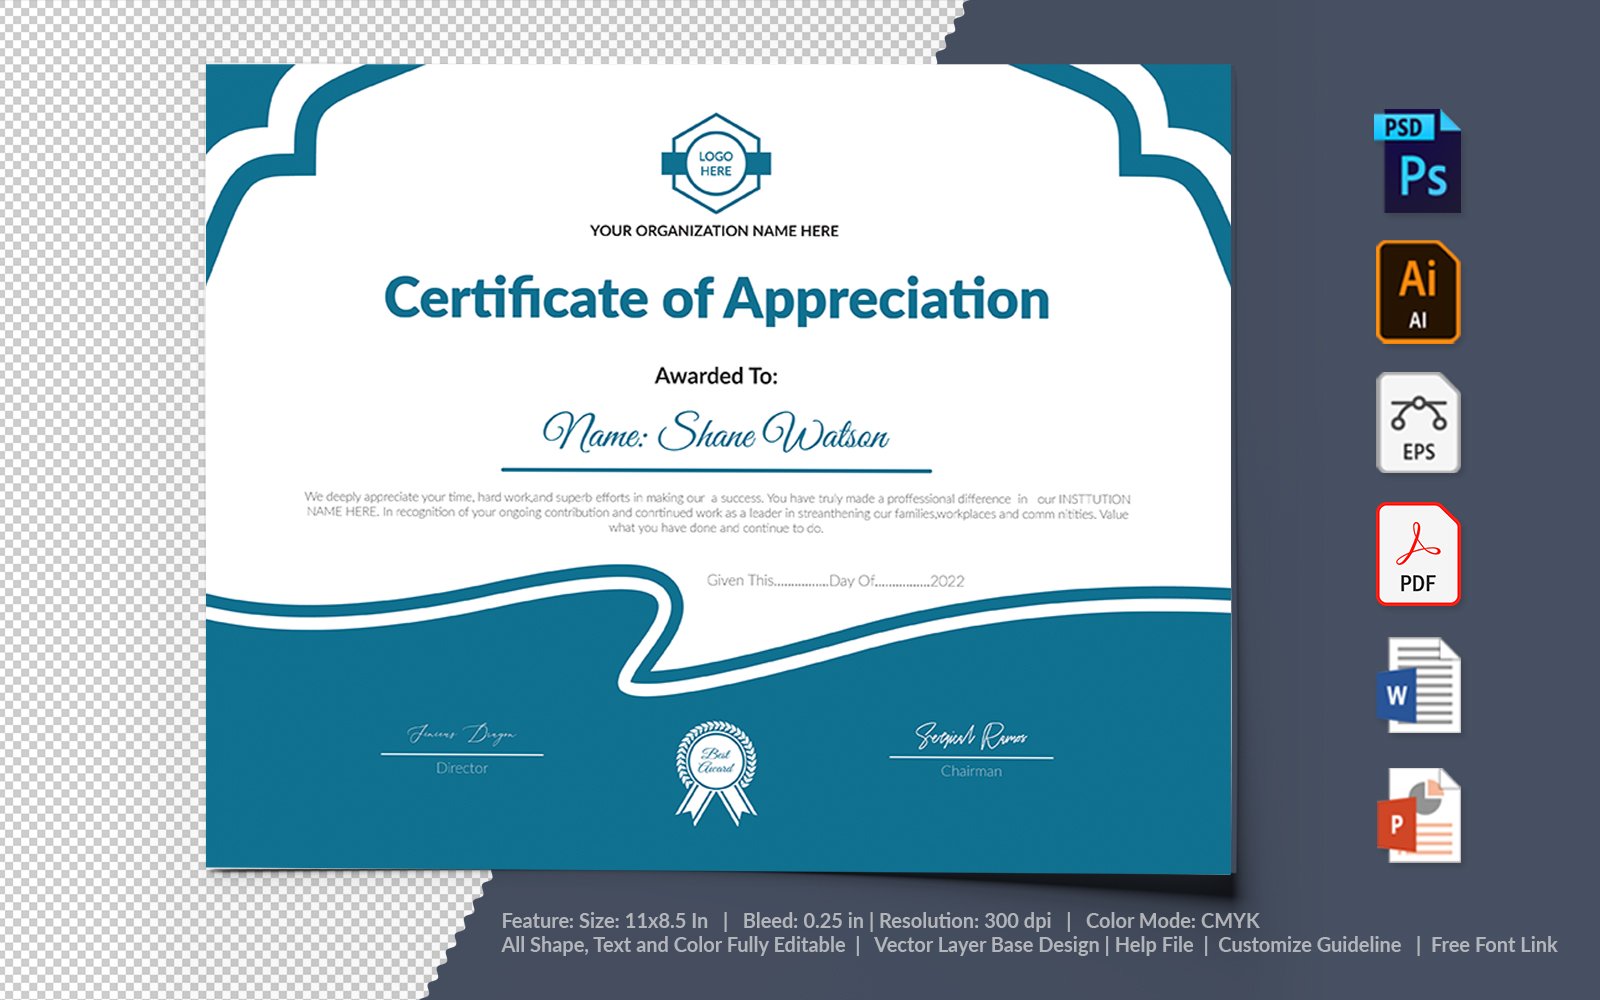 Kit Graphique #104732 Certificate Appreciation Divers Modles Web - Logo template Preview